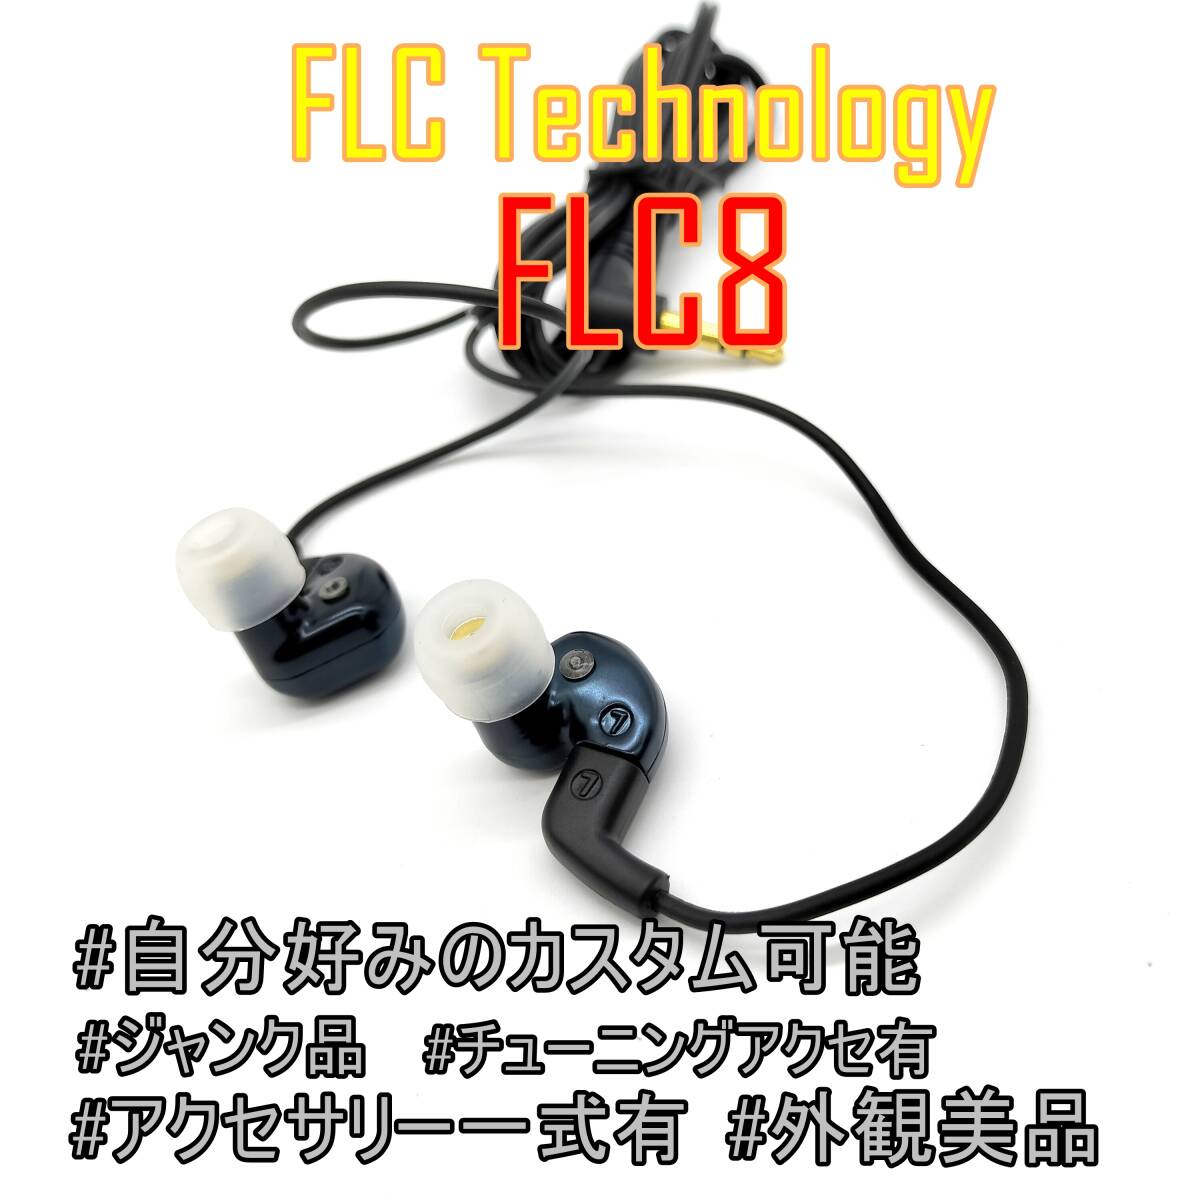 【アクセサリー一式付き】FLC Technology FLC8 自分好みのカスタマイズ可能な有線イヤホン【ジャンク品】《管理番号：2404D-11》の画像1